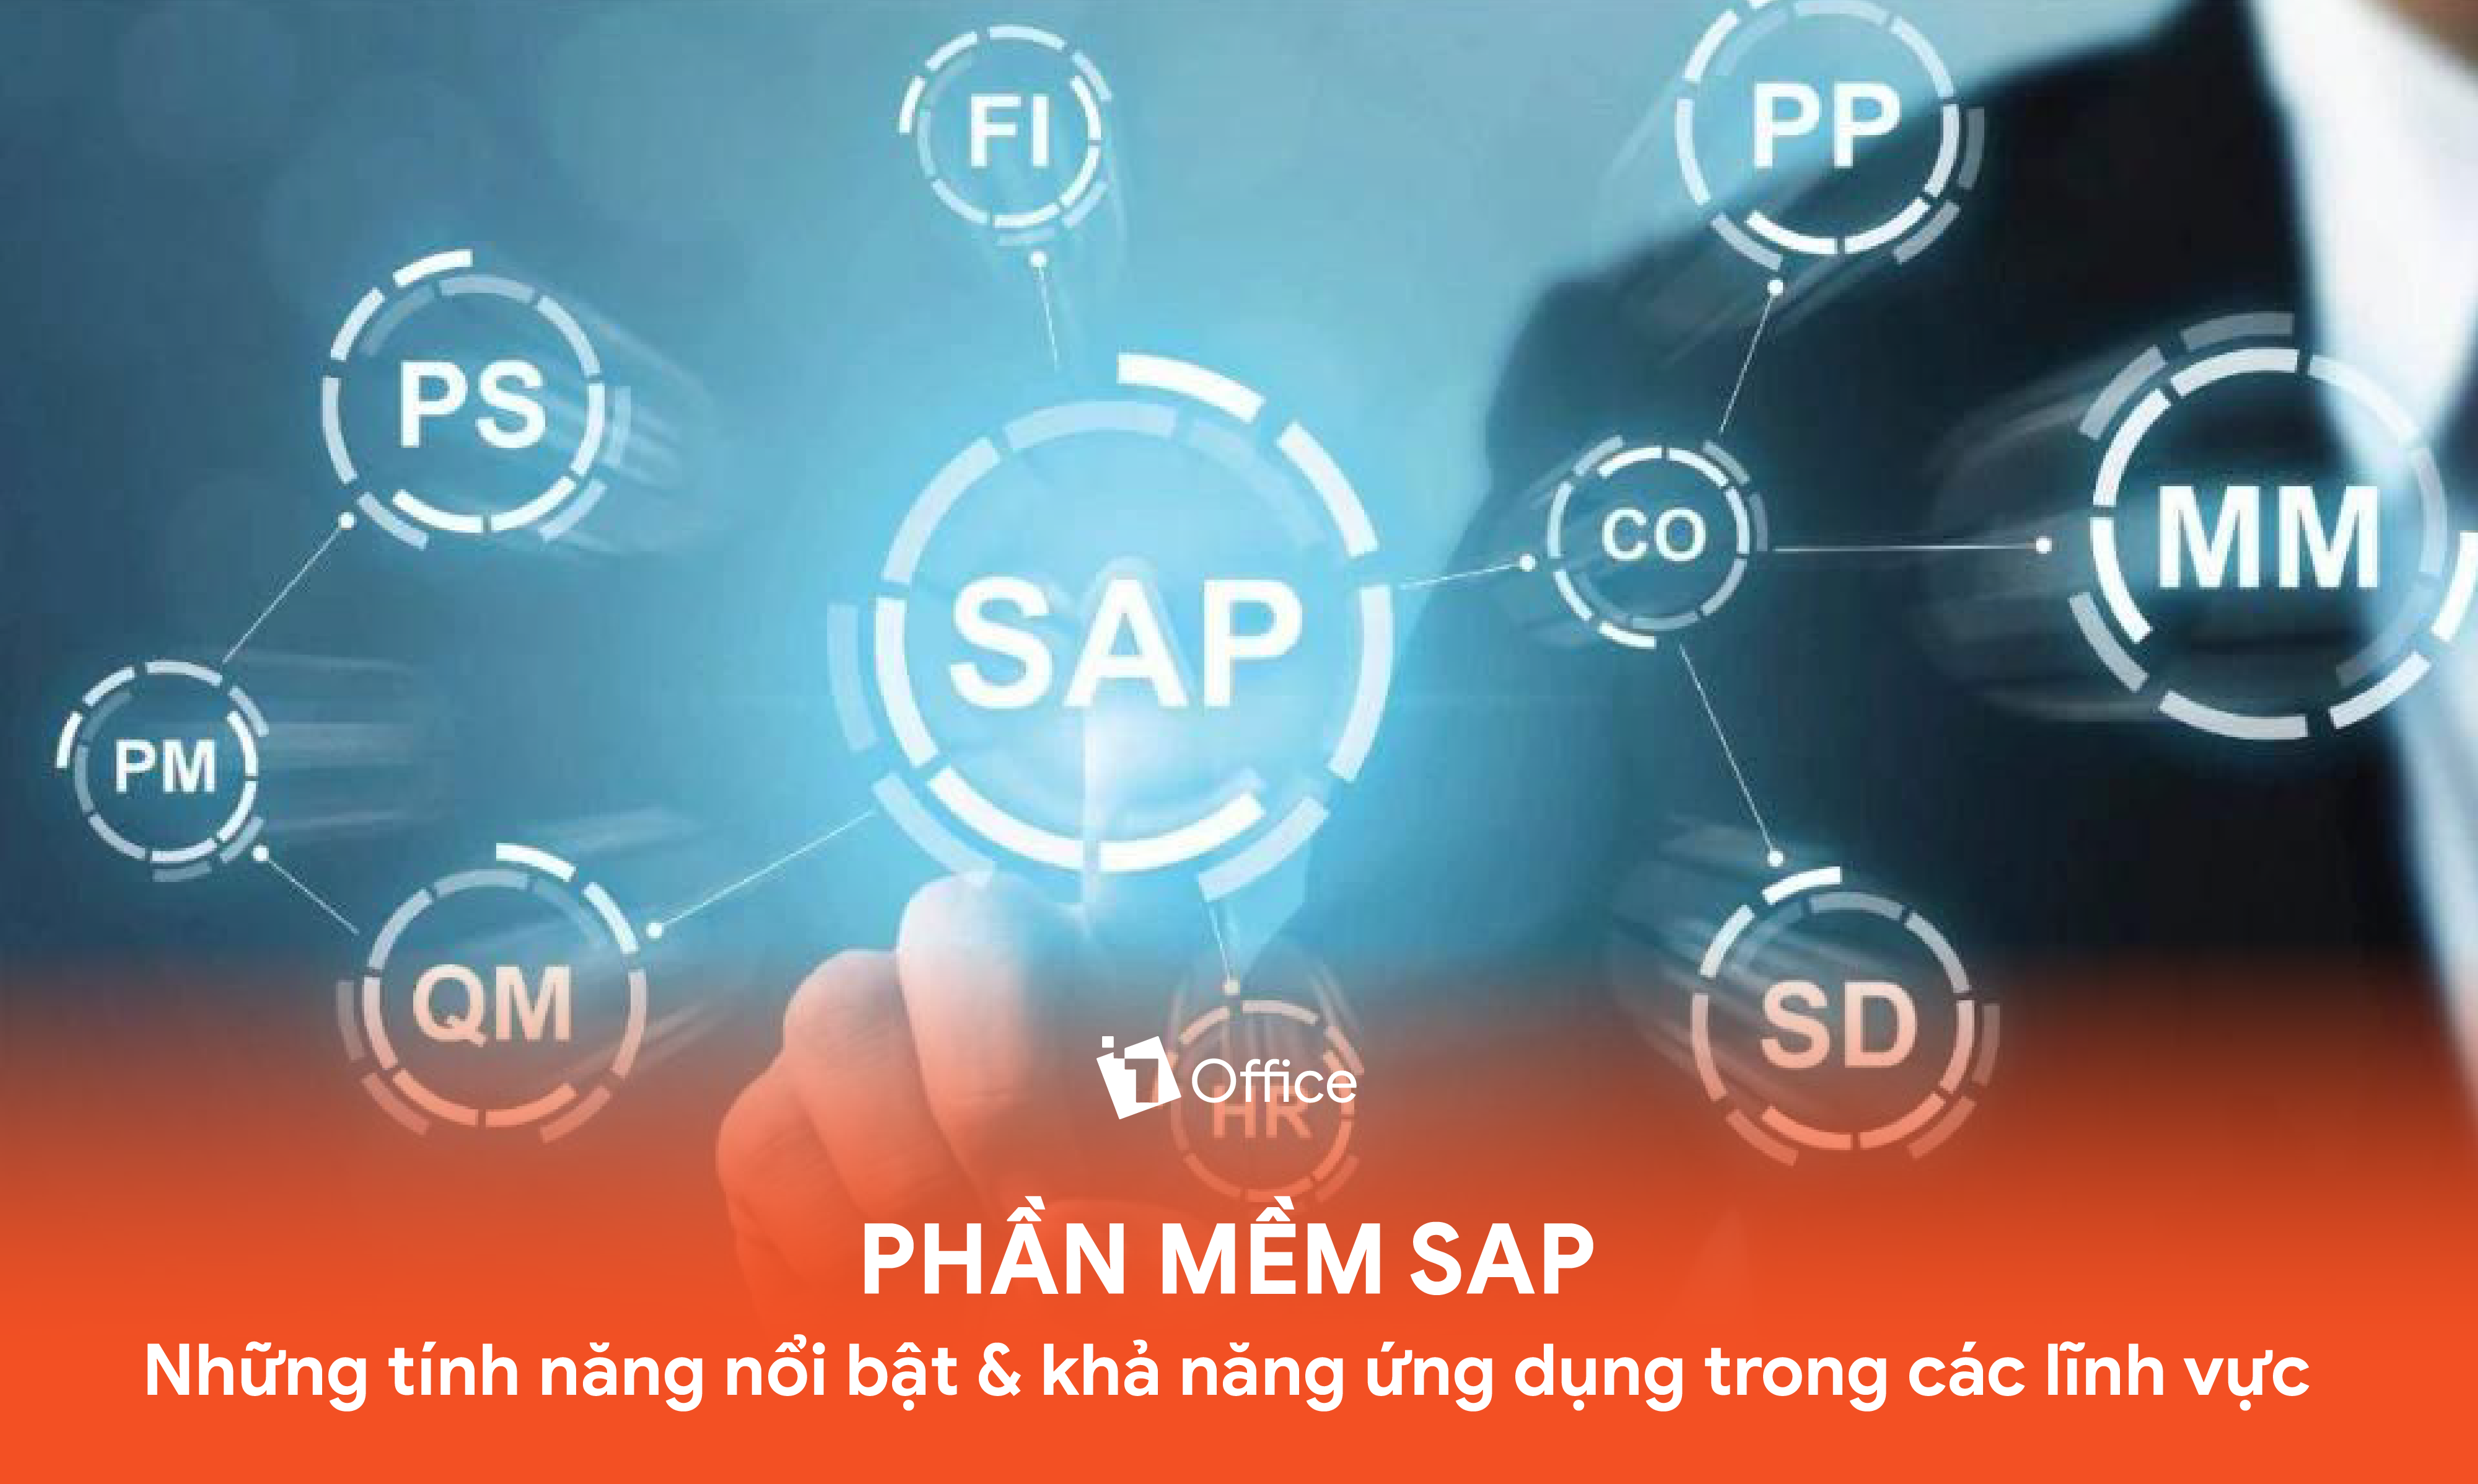 SAP là gì? Các lĩnh vực ứng dụng hệ thống SAP hiệu quả cao